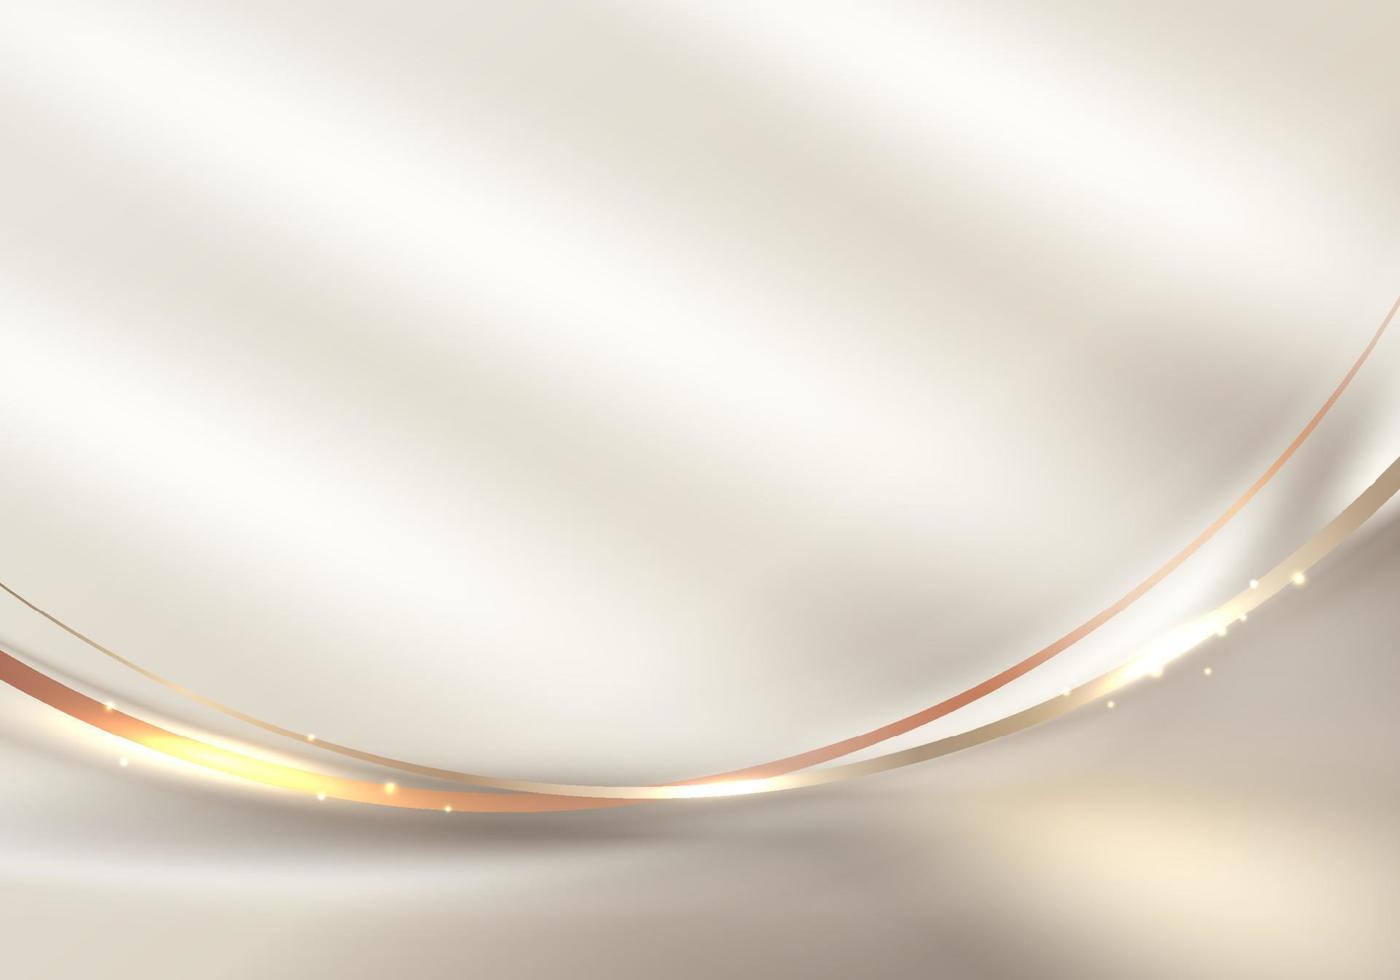 linhas curvas douradas elegantes abstratas 3d e faíscas de luz no estilo de luxo de fundo limpo vetor